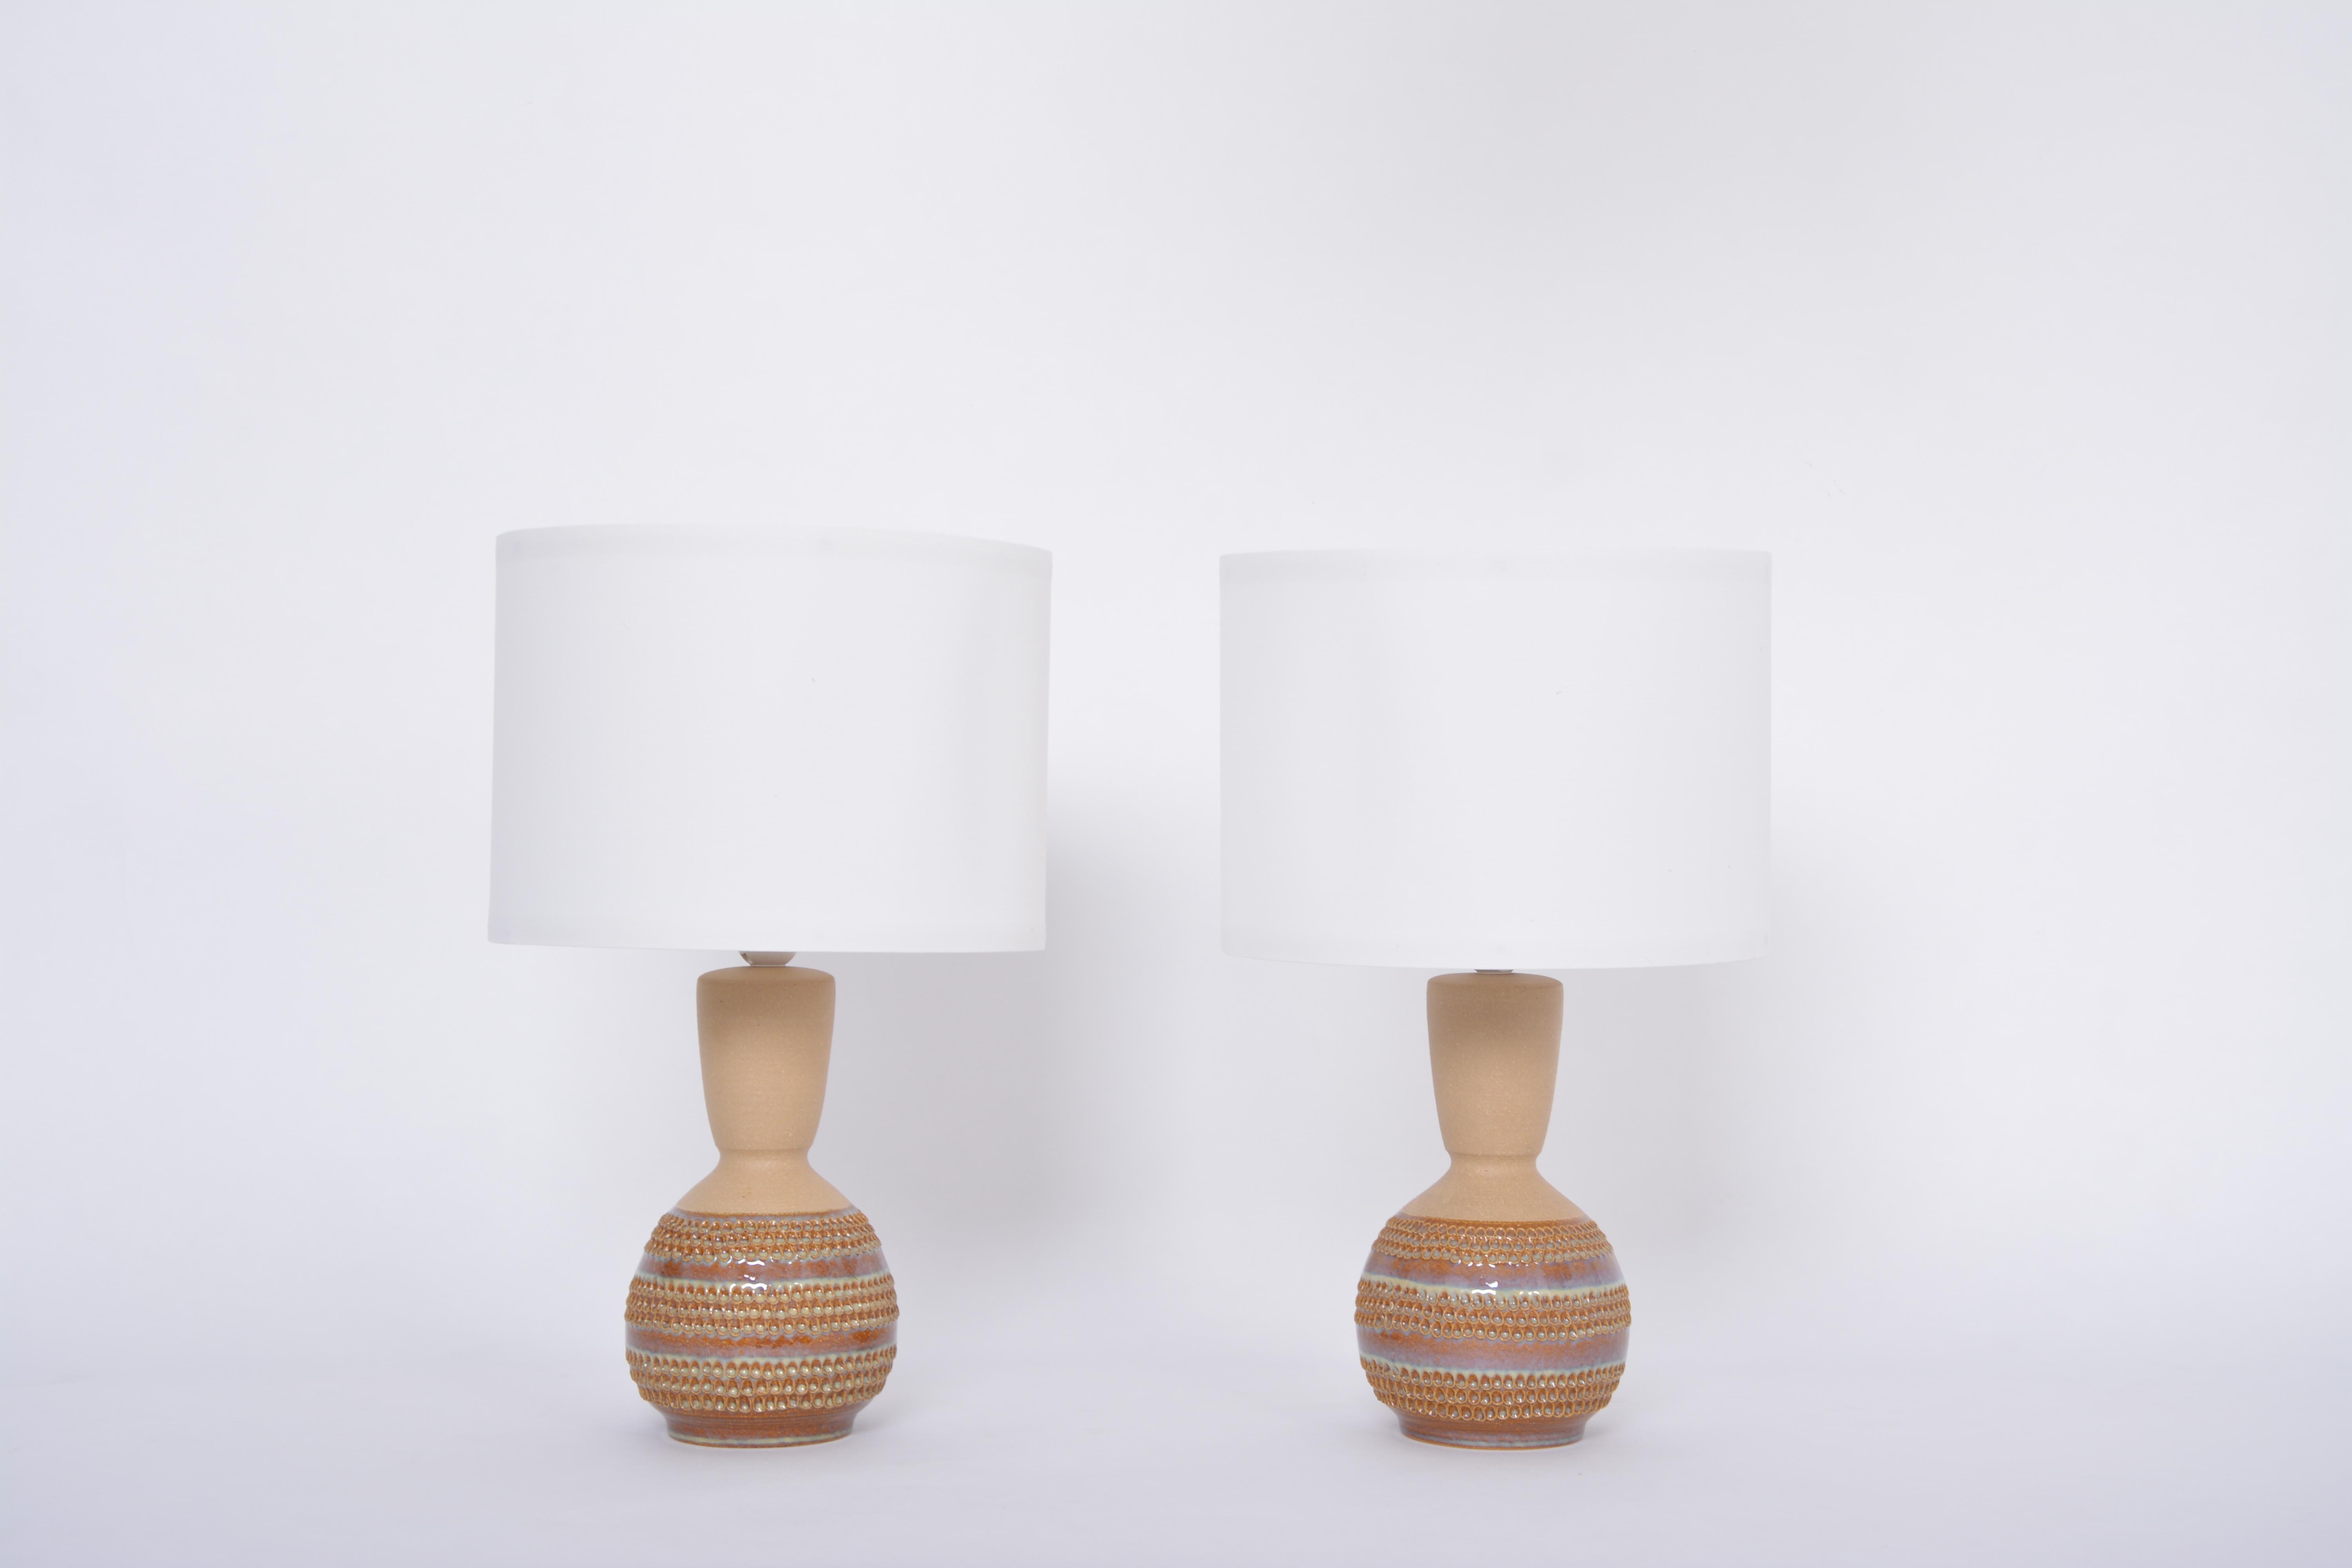 Paire de lampes de table danoises Modernity en céramique modèle 3038 par Soholm
Cette paire de lampes de table en céramique a été produite par Soholm Stentoj au Danemark dans les années 1970. Magnifiques pieds de lampe faits à la main, de forme